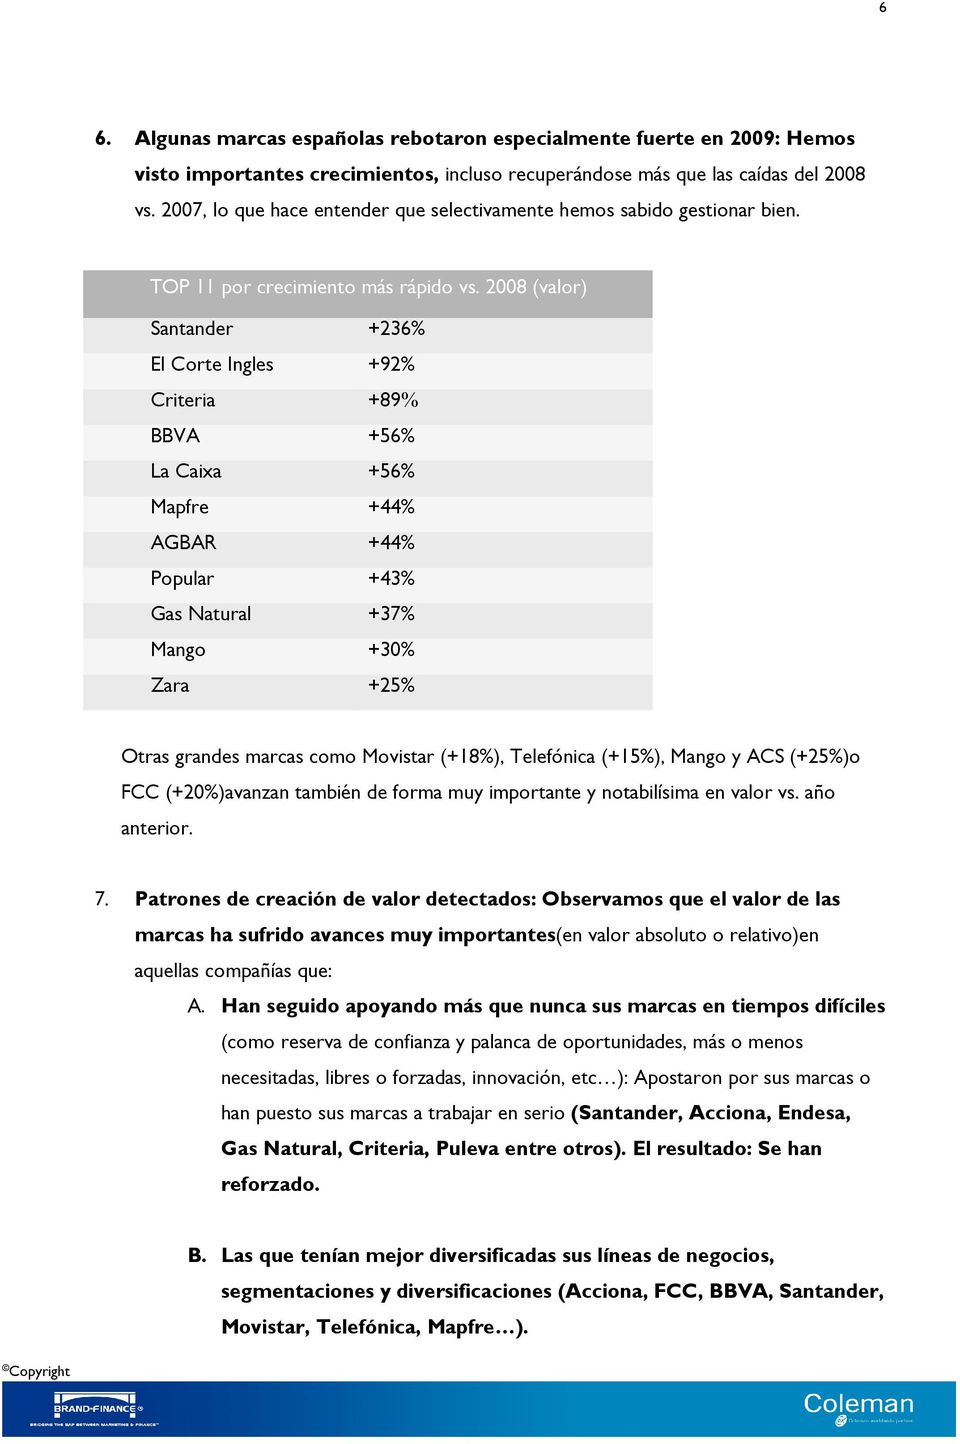 2008 (valor) Santander +236% El Corte Ingles +92% Criteria +89% BBVA +56% La Caixa +56% Mapfre +44% AGBAR +44% Popular +43% Gas Natural +37% Mango +30% Zara +25% Otras grandes marcas como Movistar